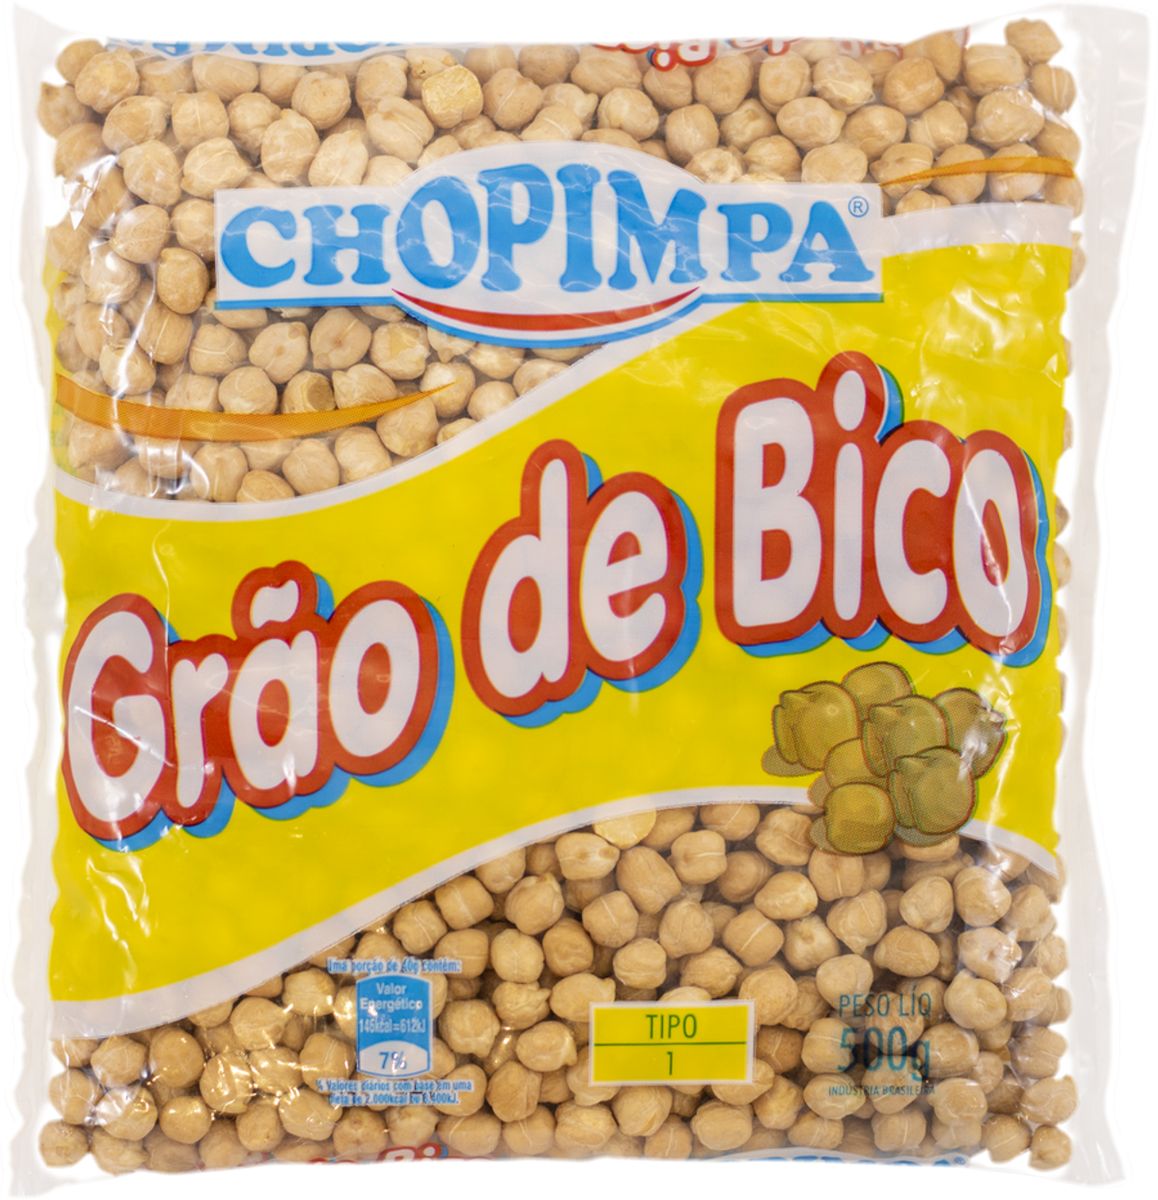 Grão de Bico Chopimpa TP-1 500g